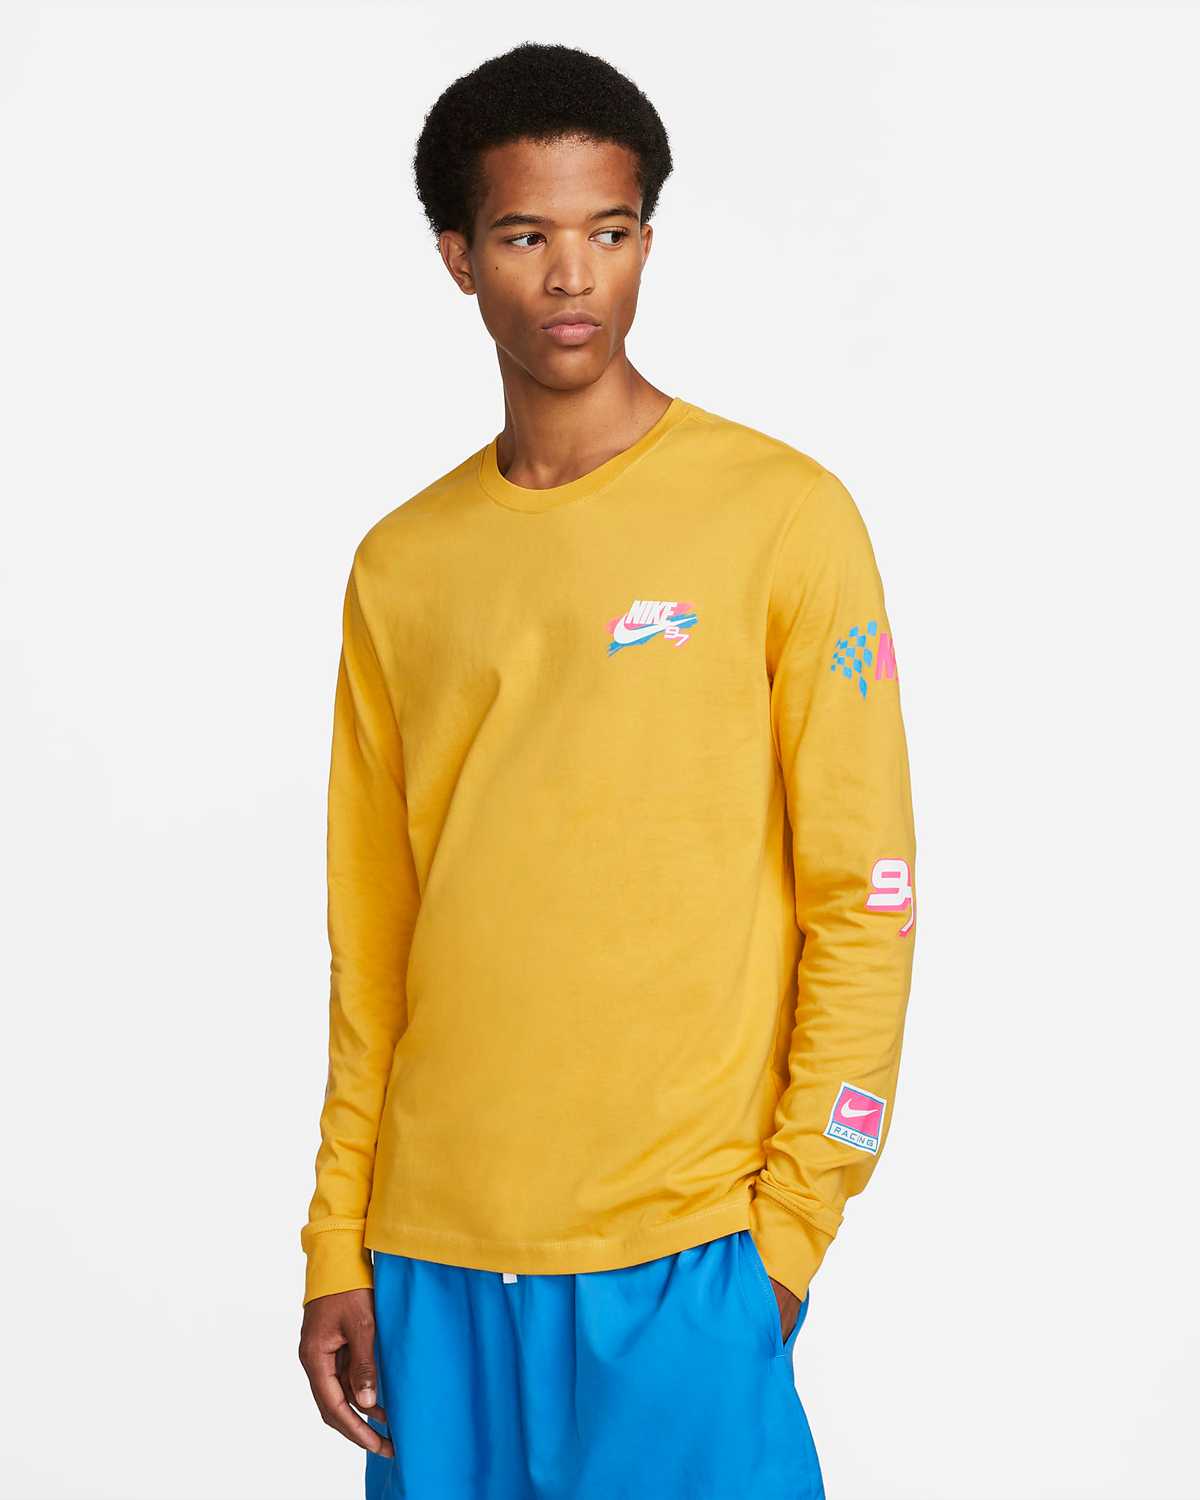 Nike-Sportswear-Long-Sleeve-T-Shirt-Yellow-Ochre-1